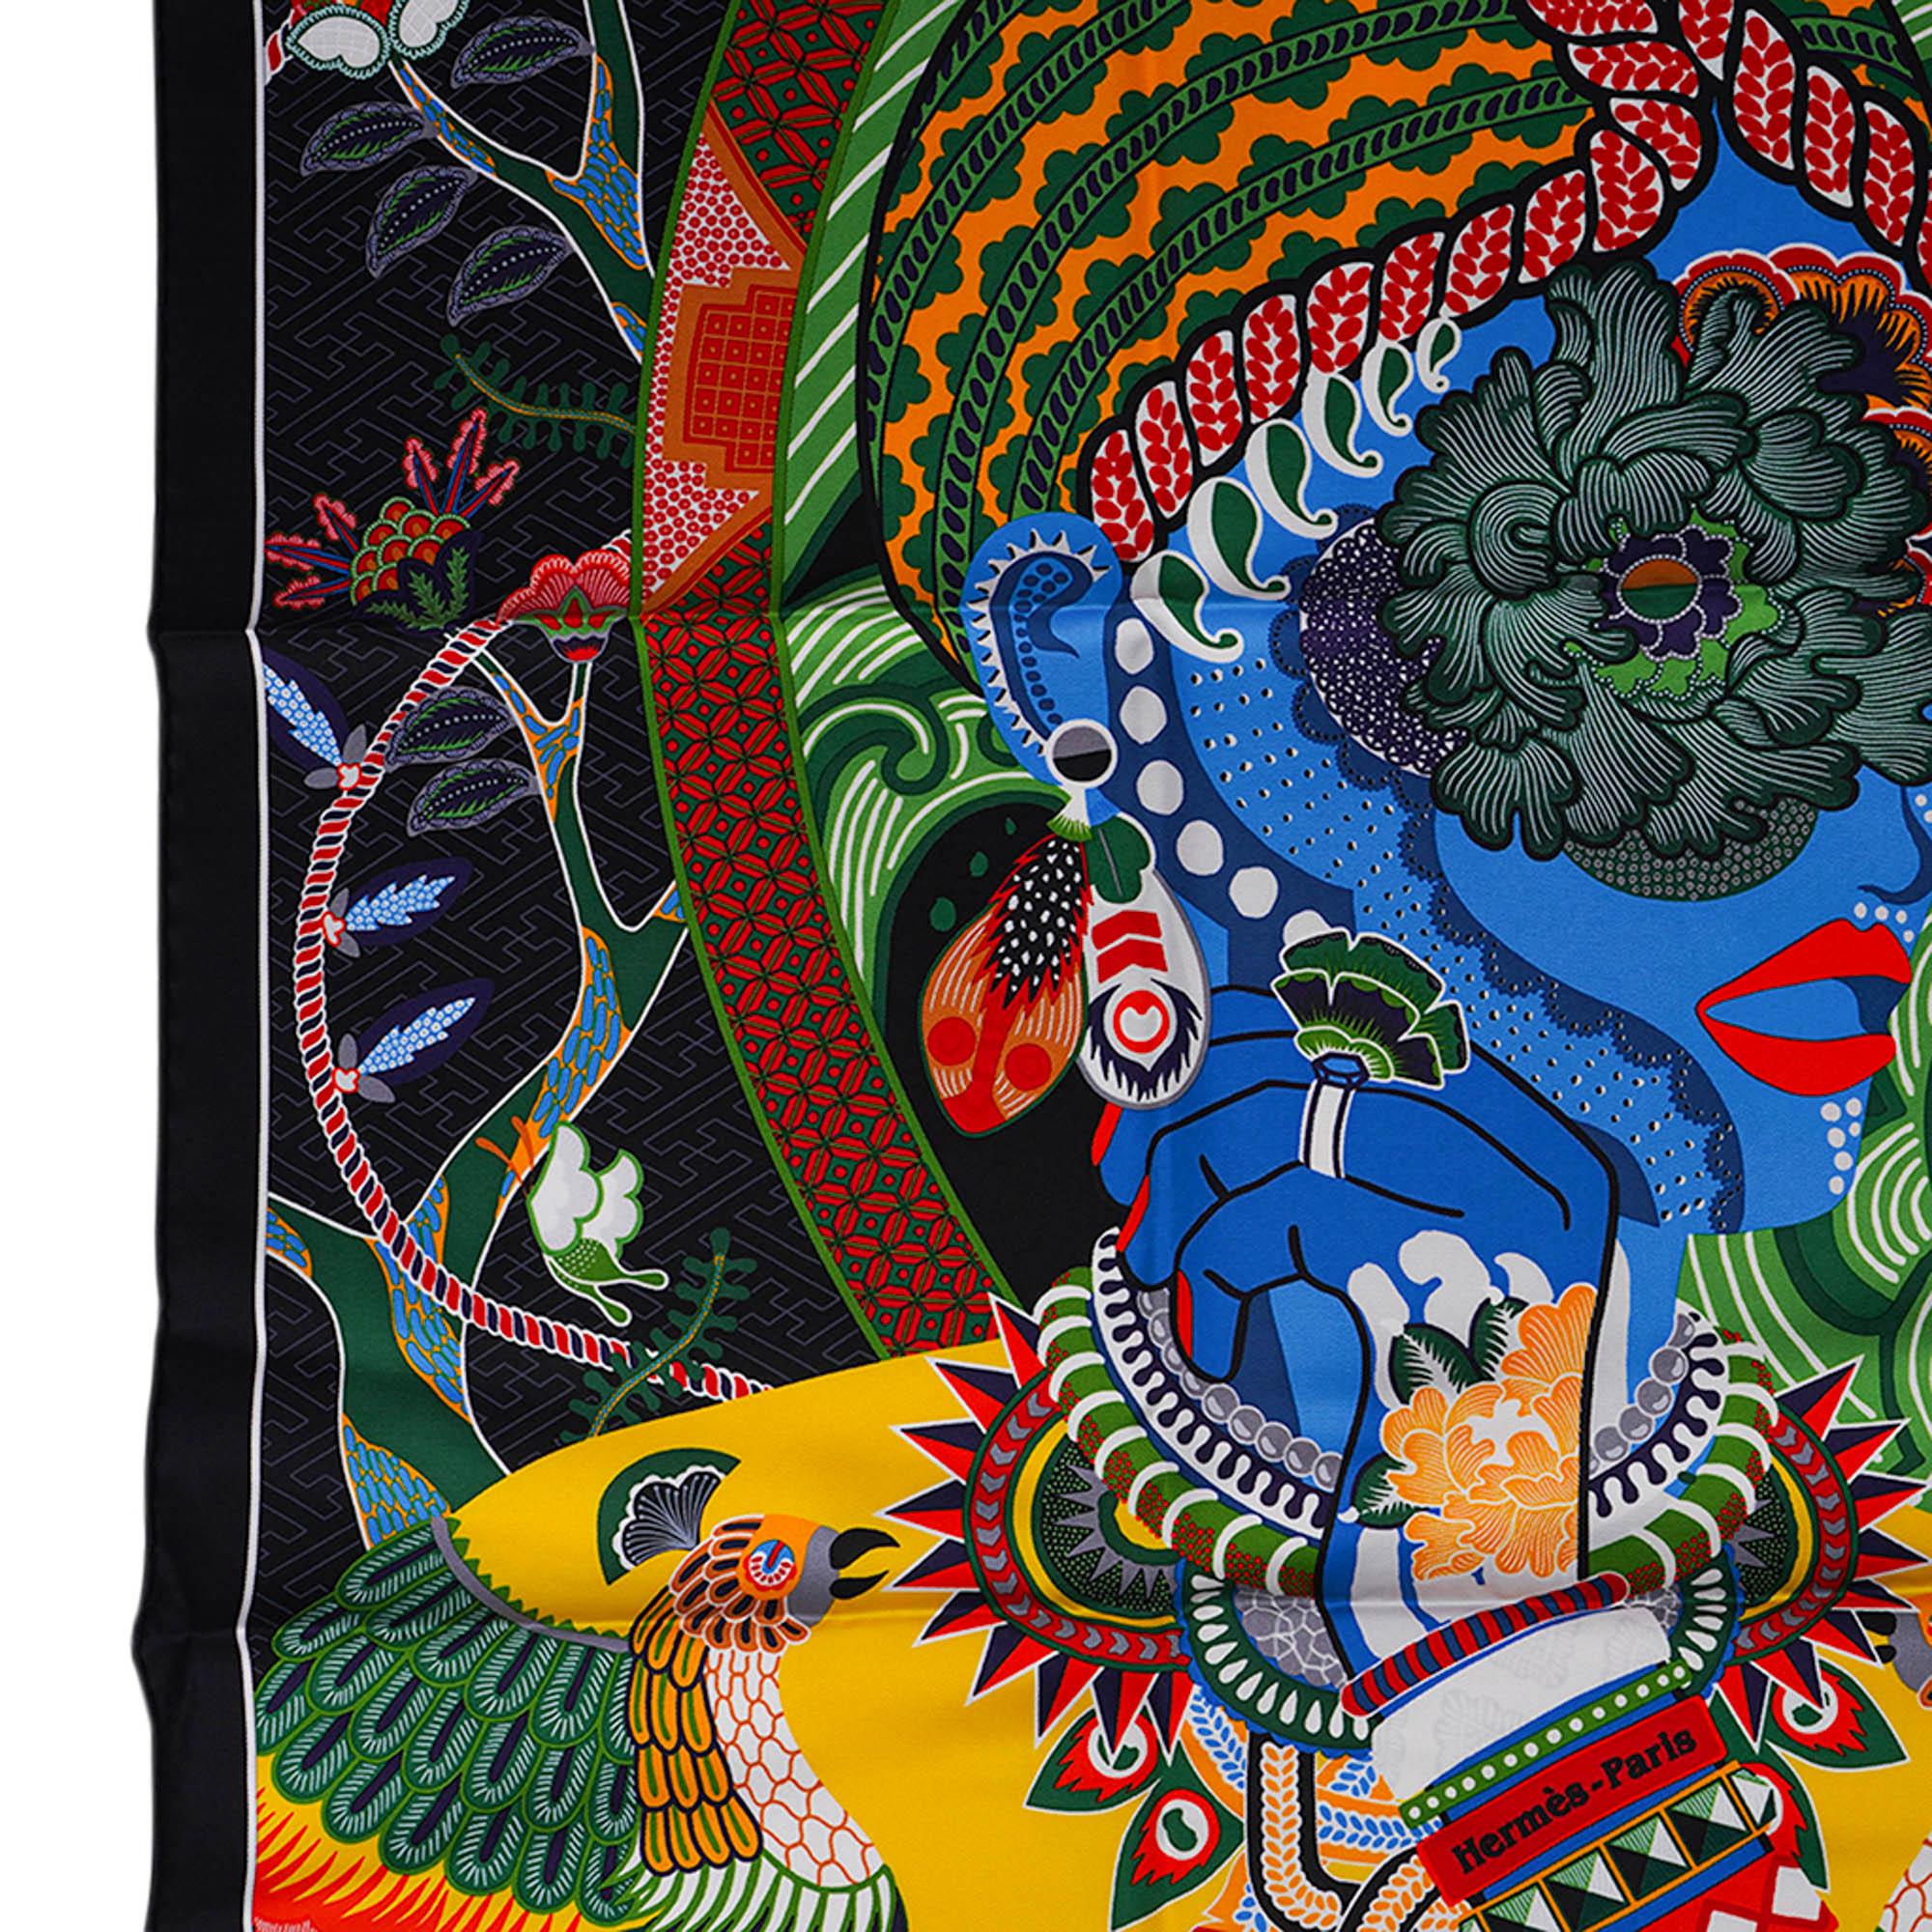 Mightychic propose un foulard Hermes Duo Cosmique en twill de soie.
Disponible en noir, vert et multicolore.
L'écharpe rend hommage au bouddhisme tantrique et à la culture japonaise.
Design/One par Kohei Kyomori qui est le lauréat du Grand Prix du